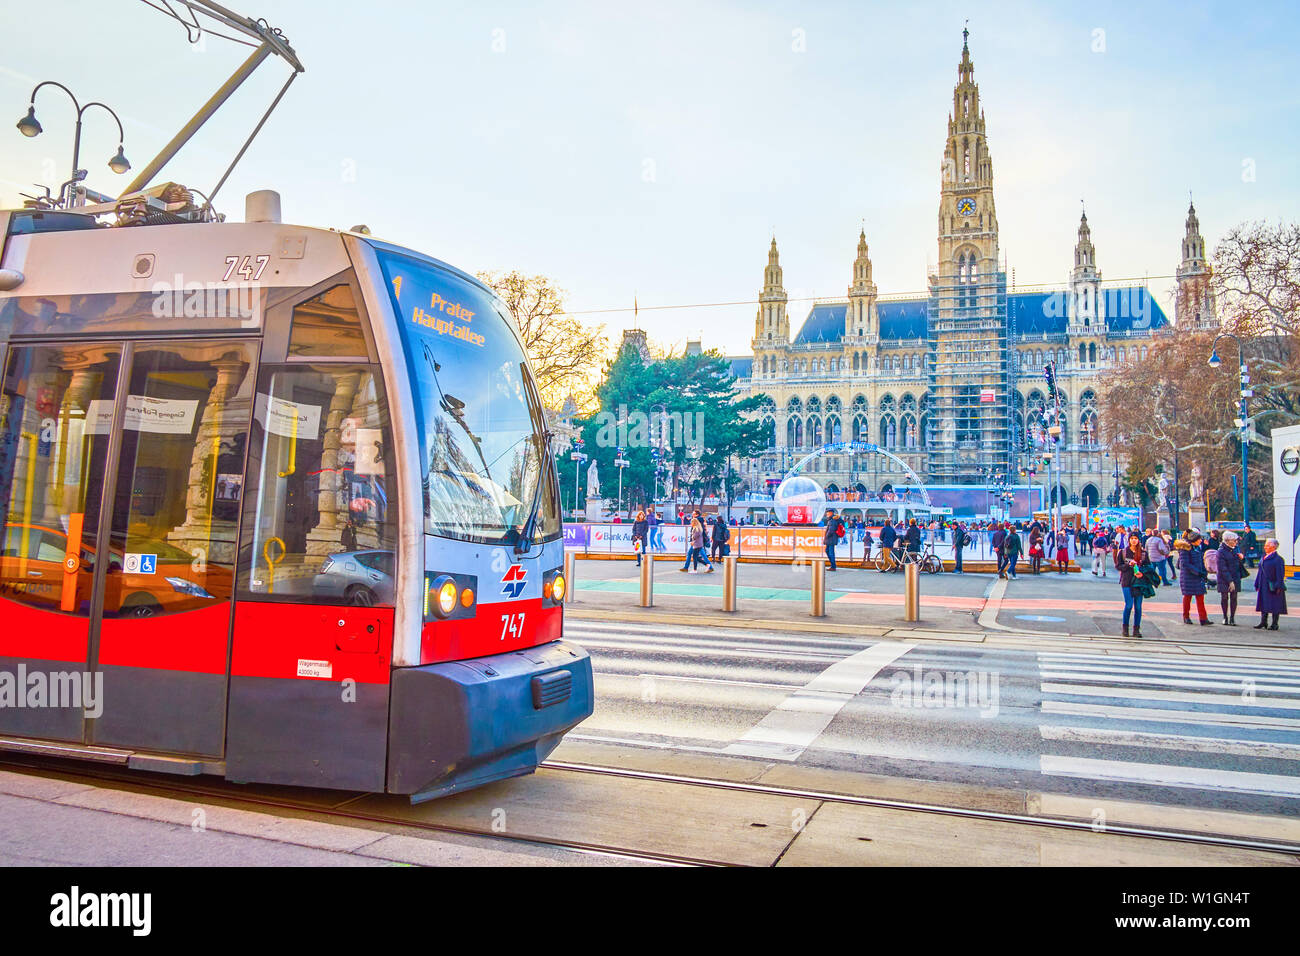 VIENNA, Austria - 18 febbraio 2019: il moderno tram scorre lungo la famosa Ringstrasse, passando Rathausplatz con inverno anello di pattinaggio e bellissima città di Hall, o Foto Stock